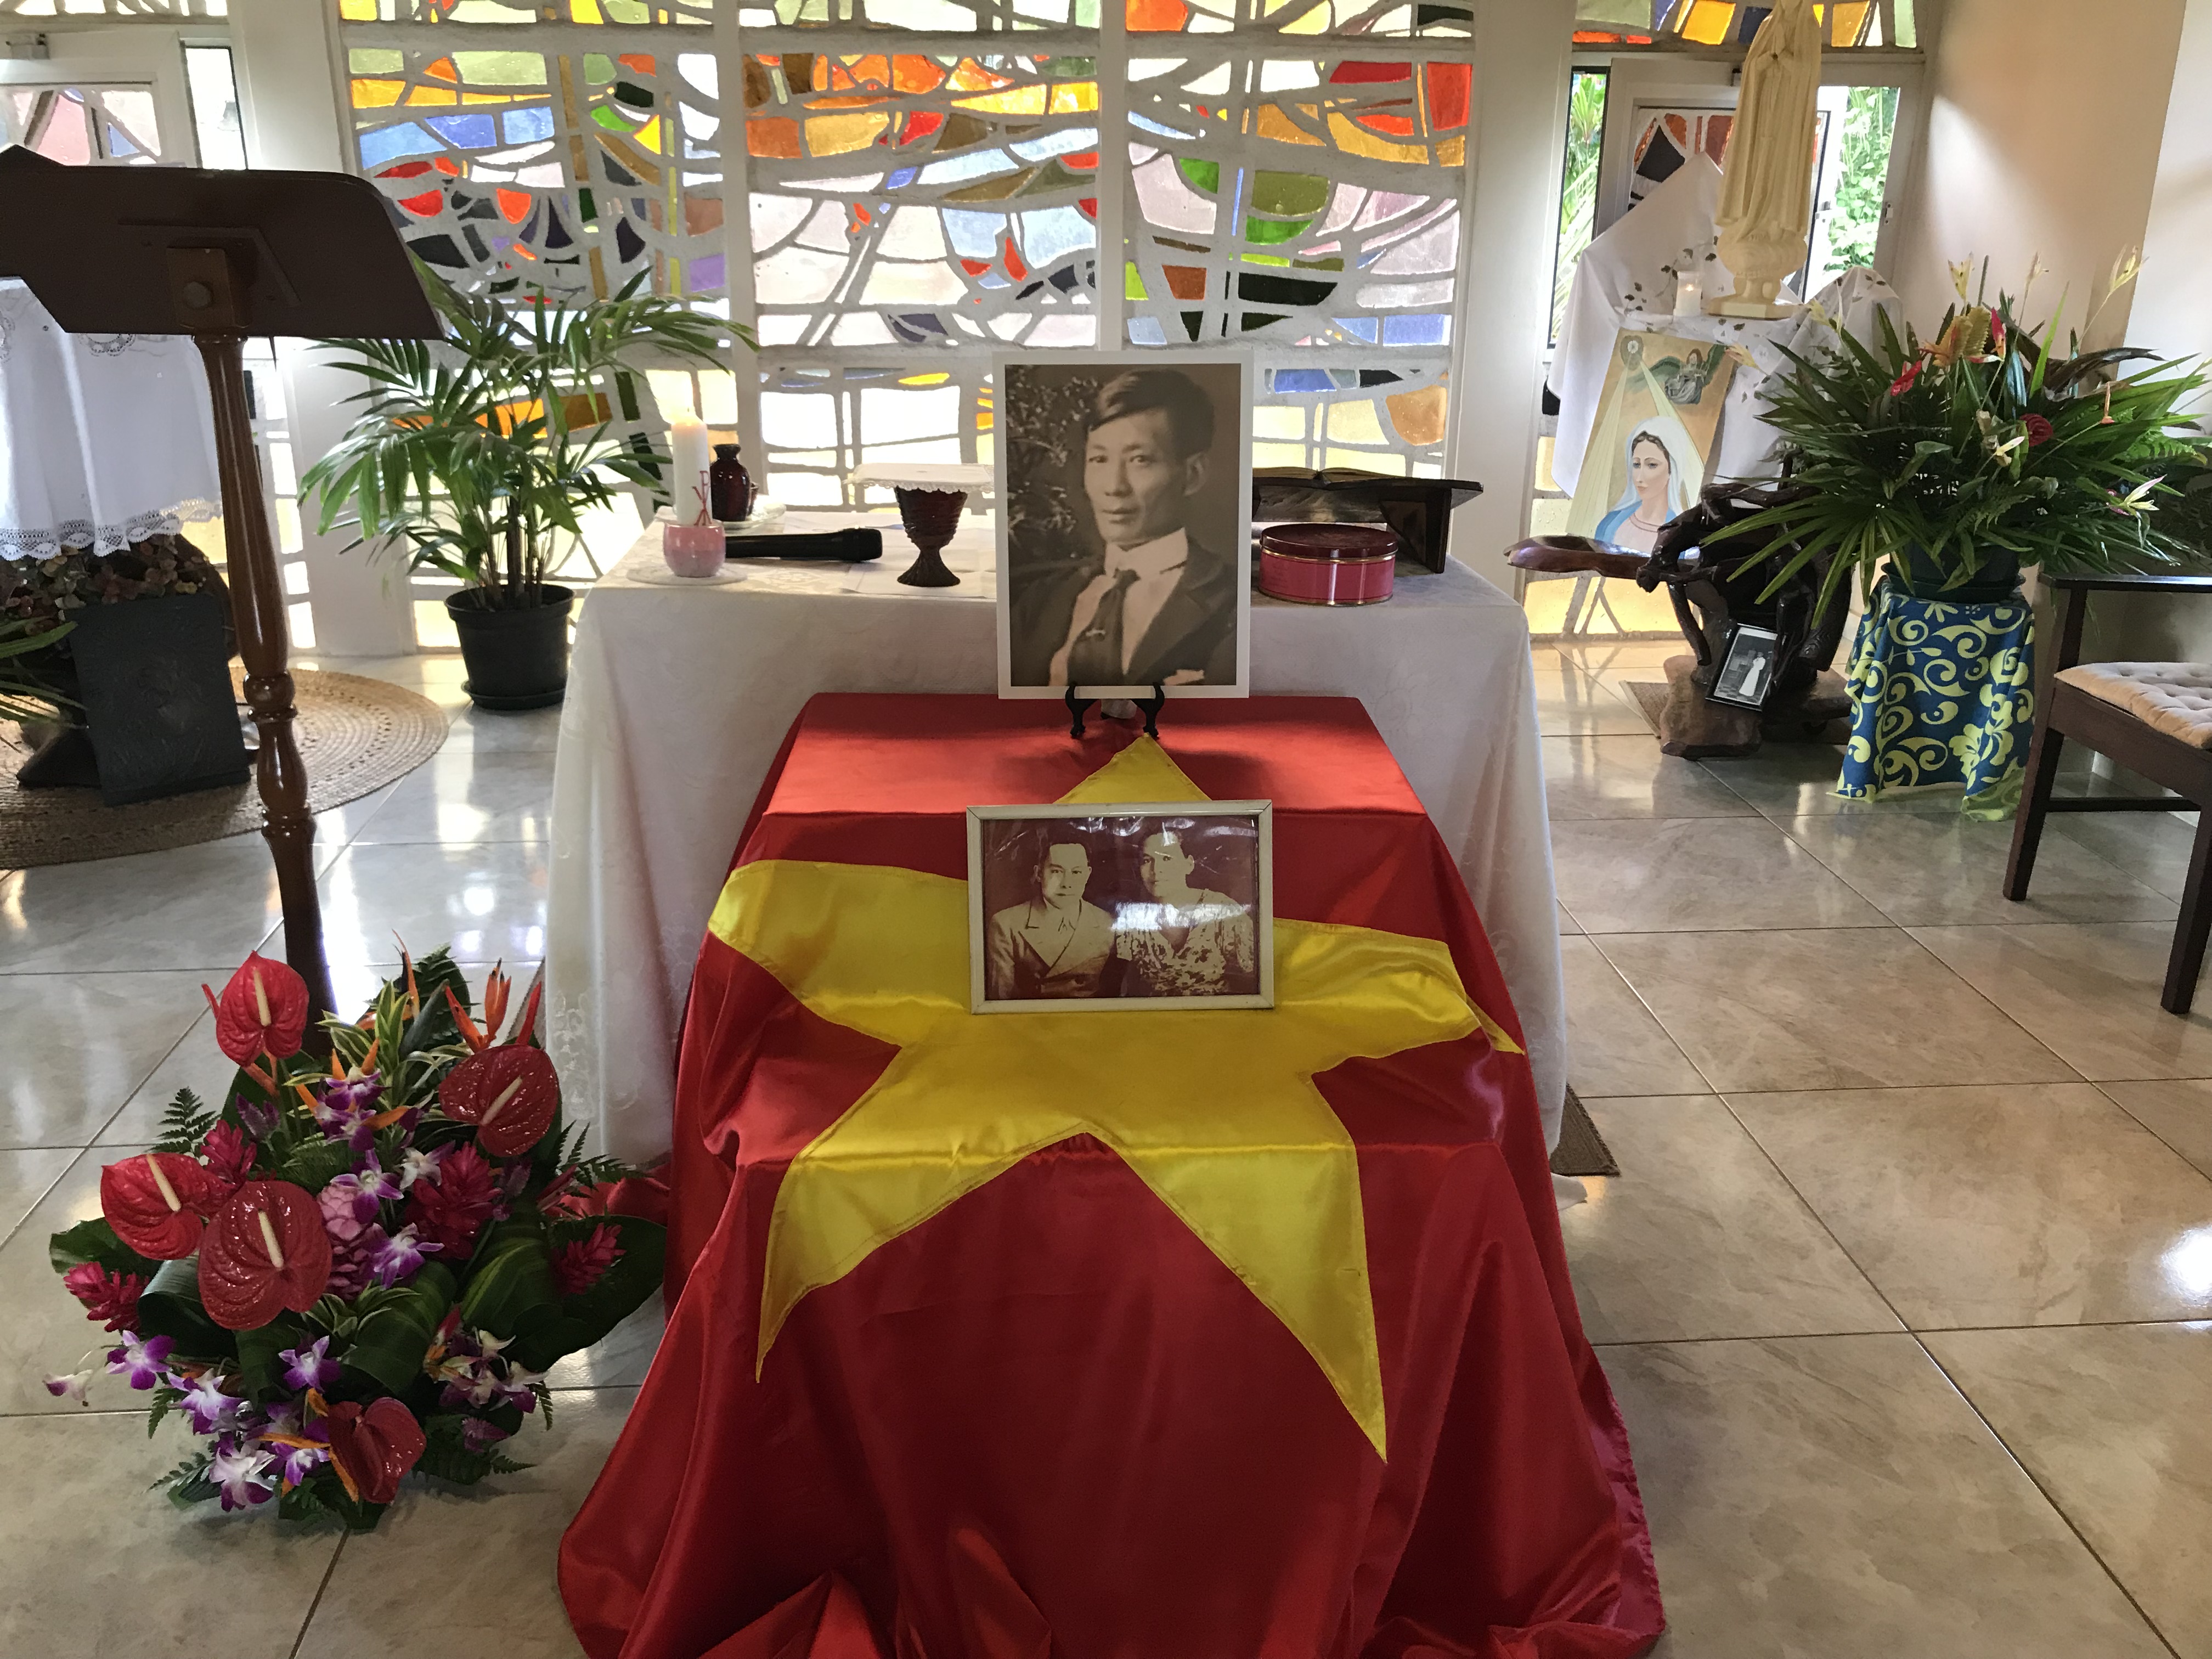 Le 17 juillet 1929 durant son exil, Ký Dông "l'enfant merveilleux", figure de la révolte indochinoise contre l'oppression coloniale française, s'est éteint à l'âge de 54 ans, à l'hôpital Vaiami de Papeete. Il est aujourd'hui enterré au cimetière de l'Uranie. Au Vietnam, c'est un héros national.